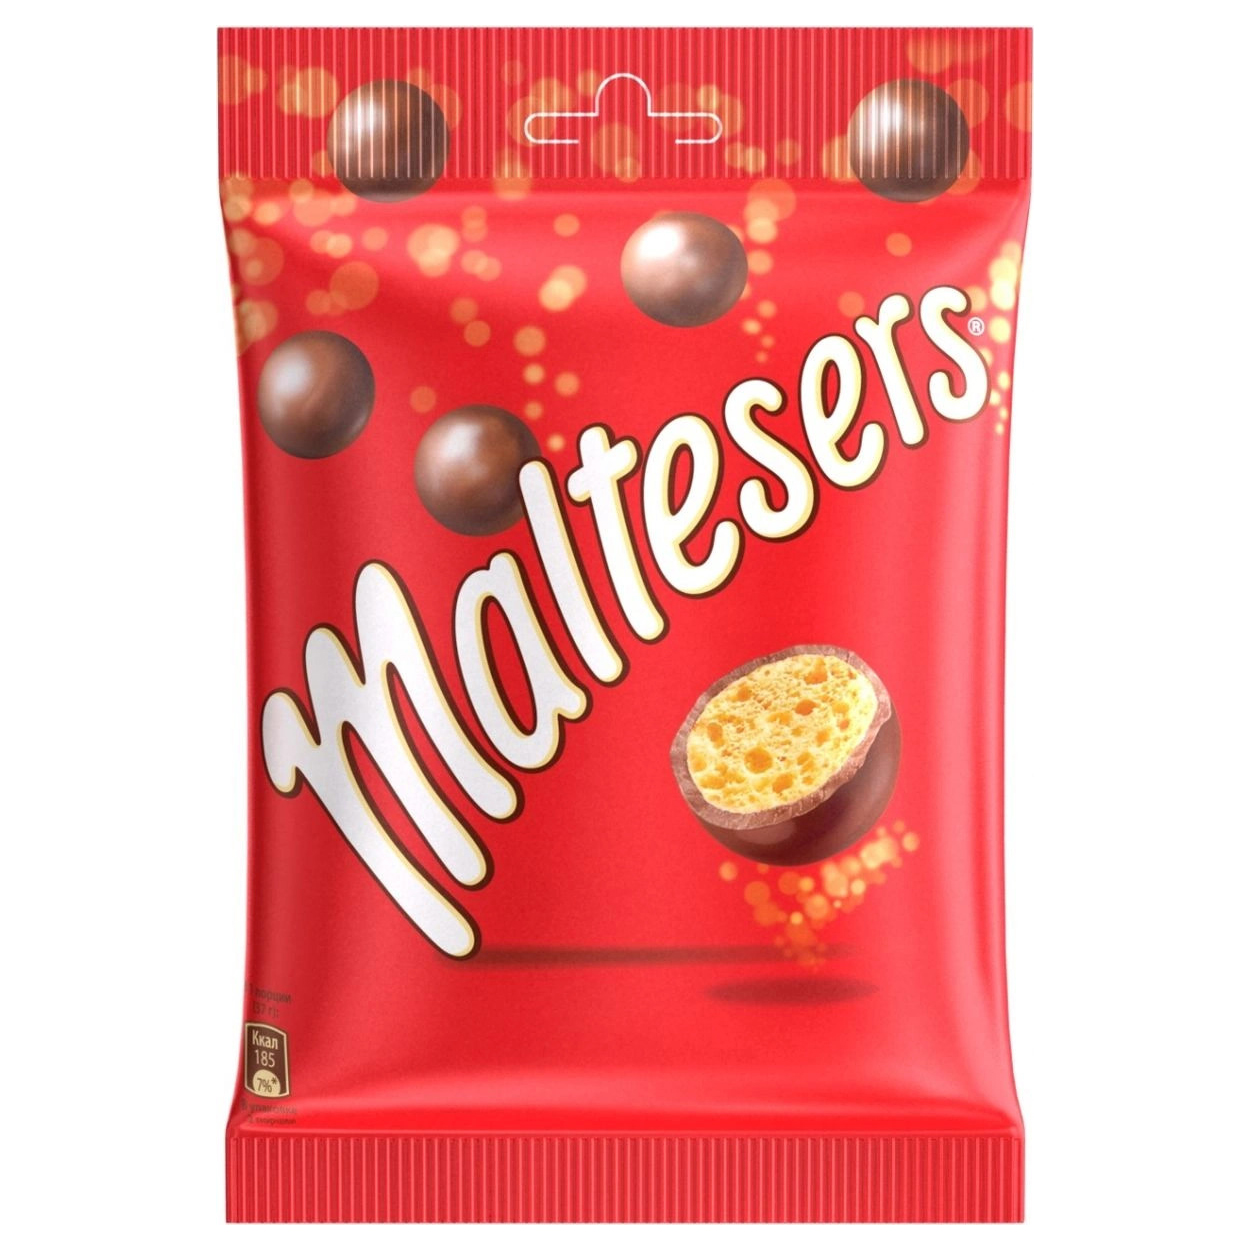 Конфеты шарики в шоколаде. Конфеты шоколадные шарики Мальтизерс. Конфеты Maltesers шоколадные шарики. Шоколадное драже Мальтизерс. Конфеты драже Maltesers.